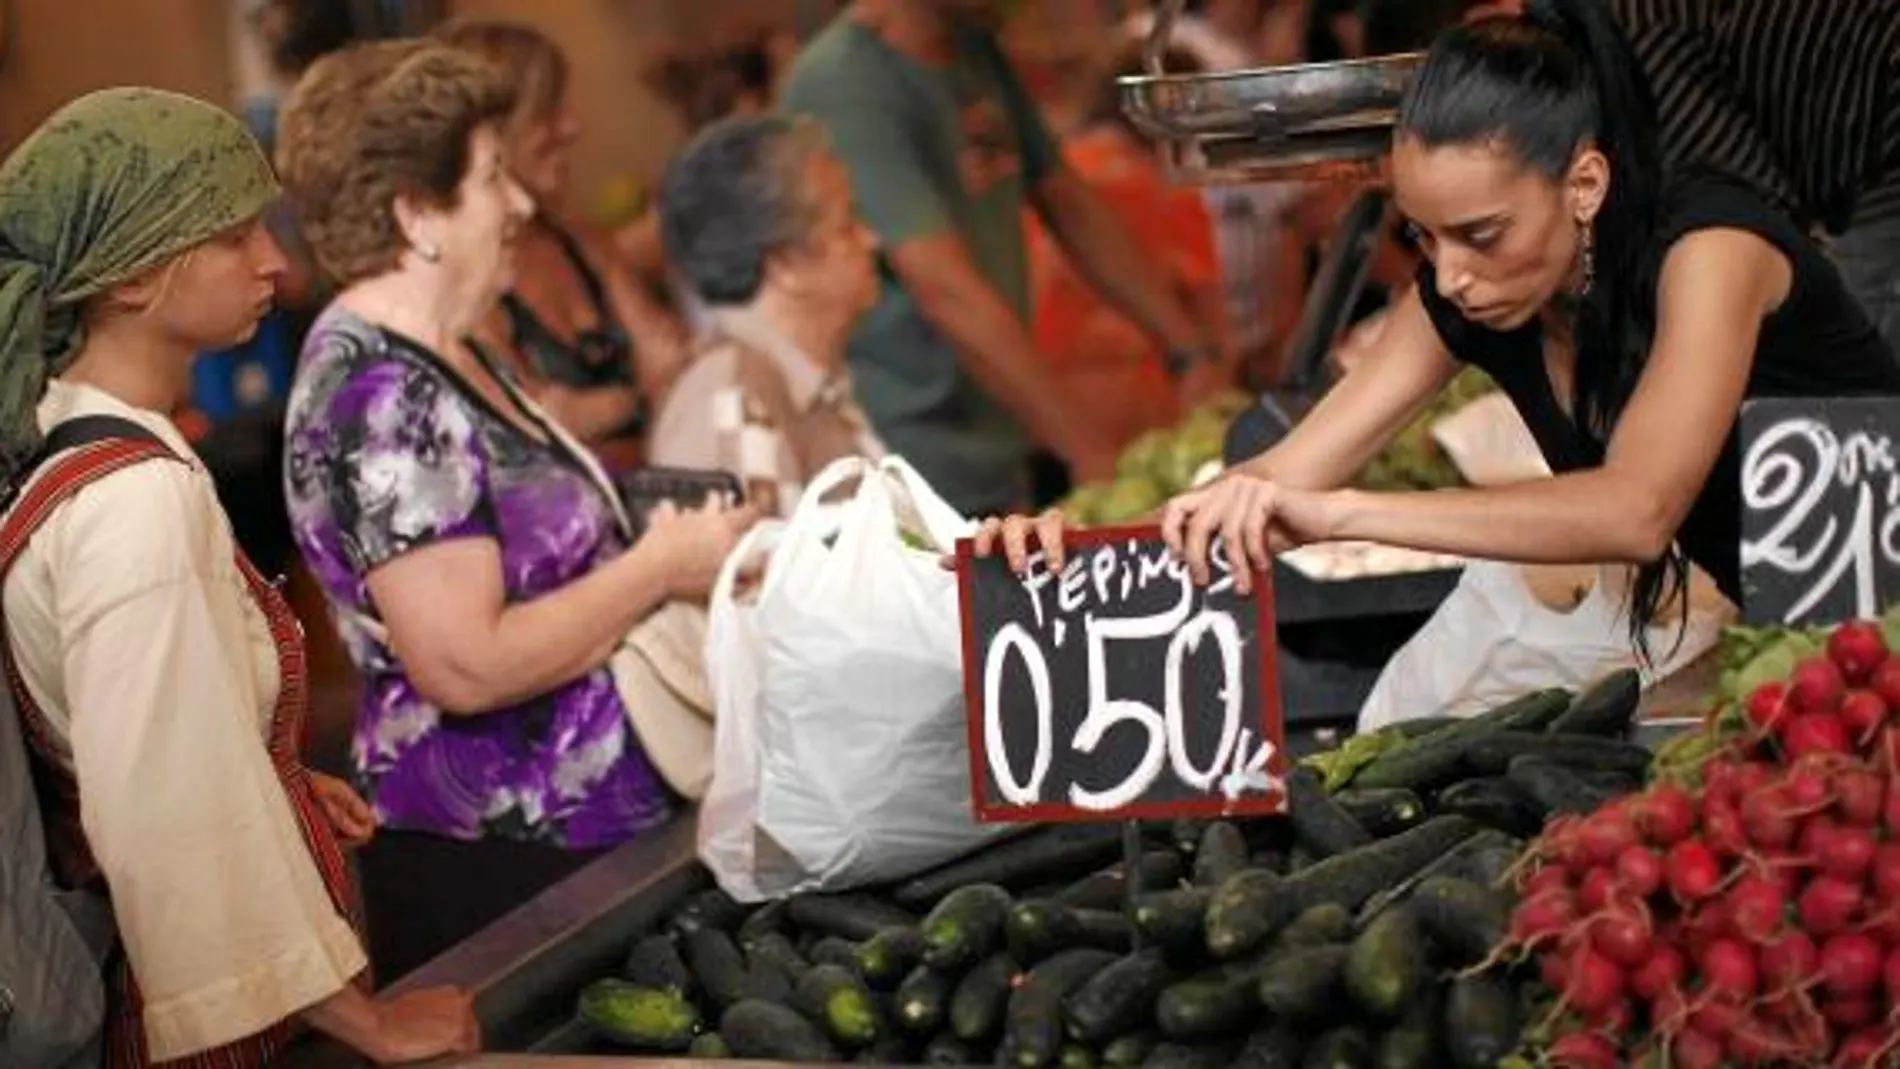 Los mercados de Madrid y Barcelona no dan a basto, están saturados de hortalizas que no venden